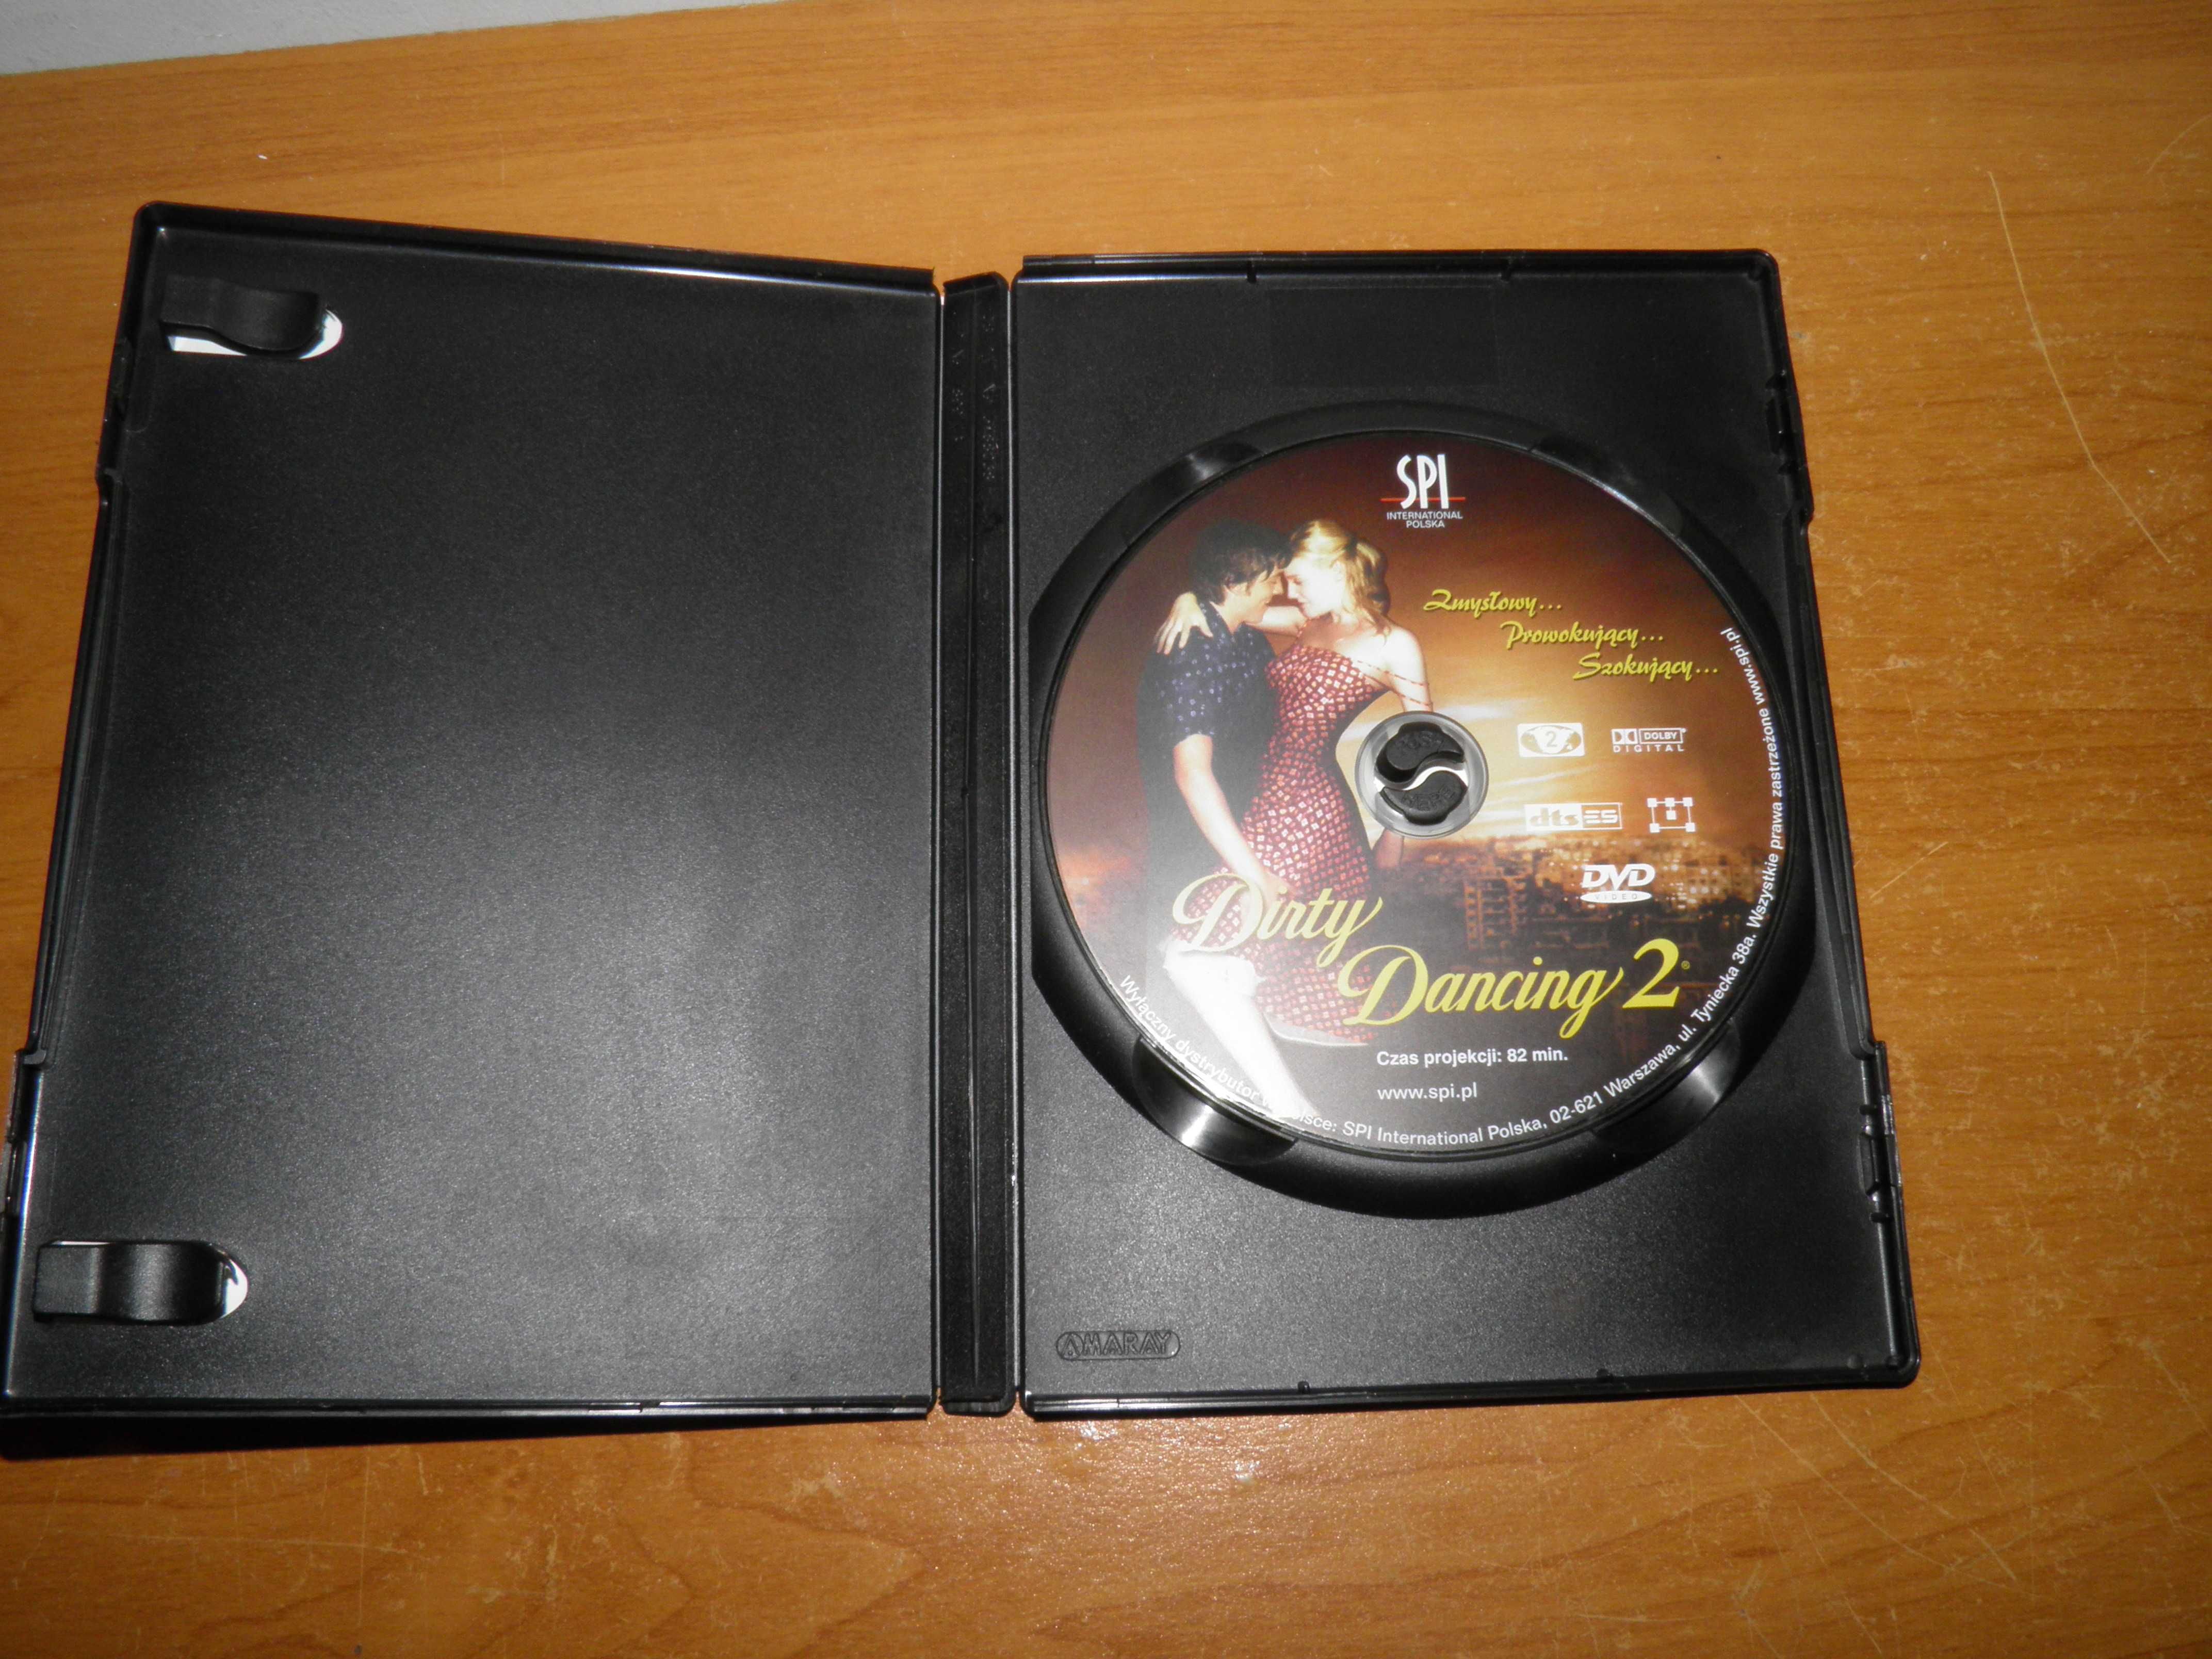 Dirty Dancing 2 film DVD